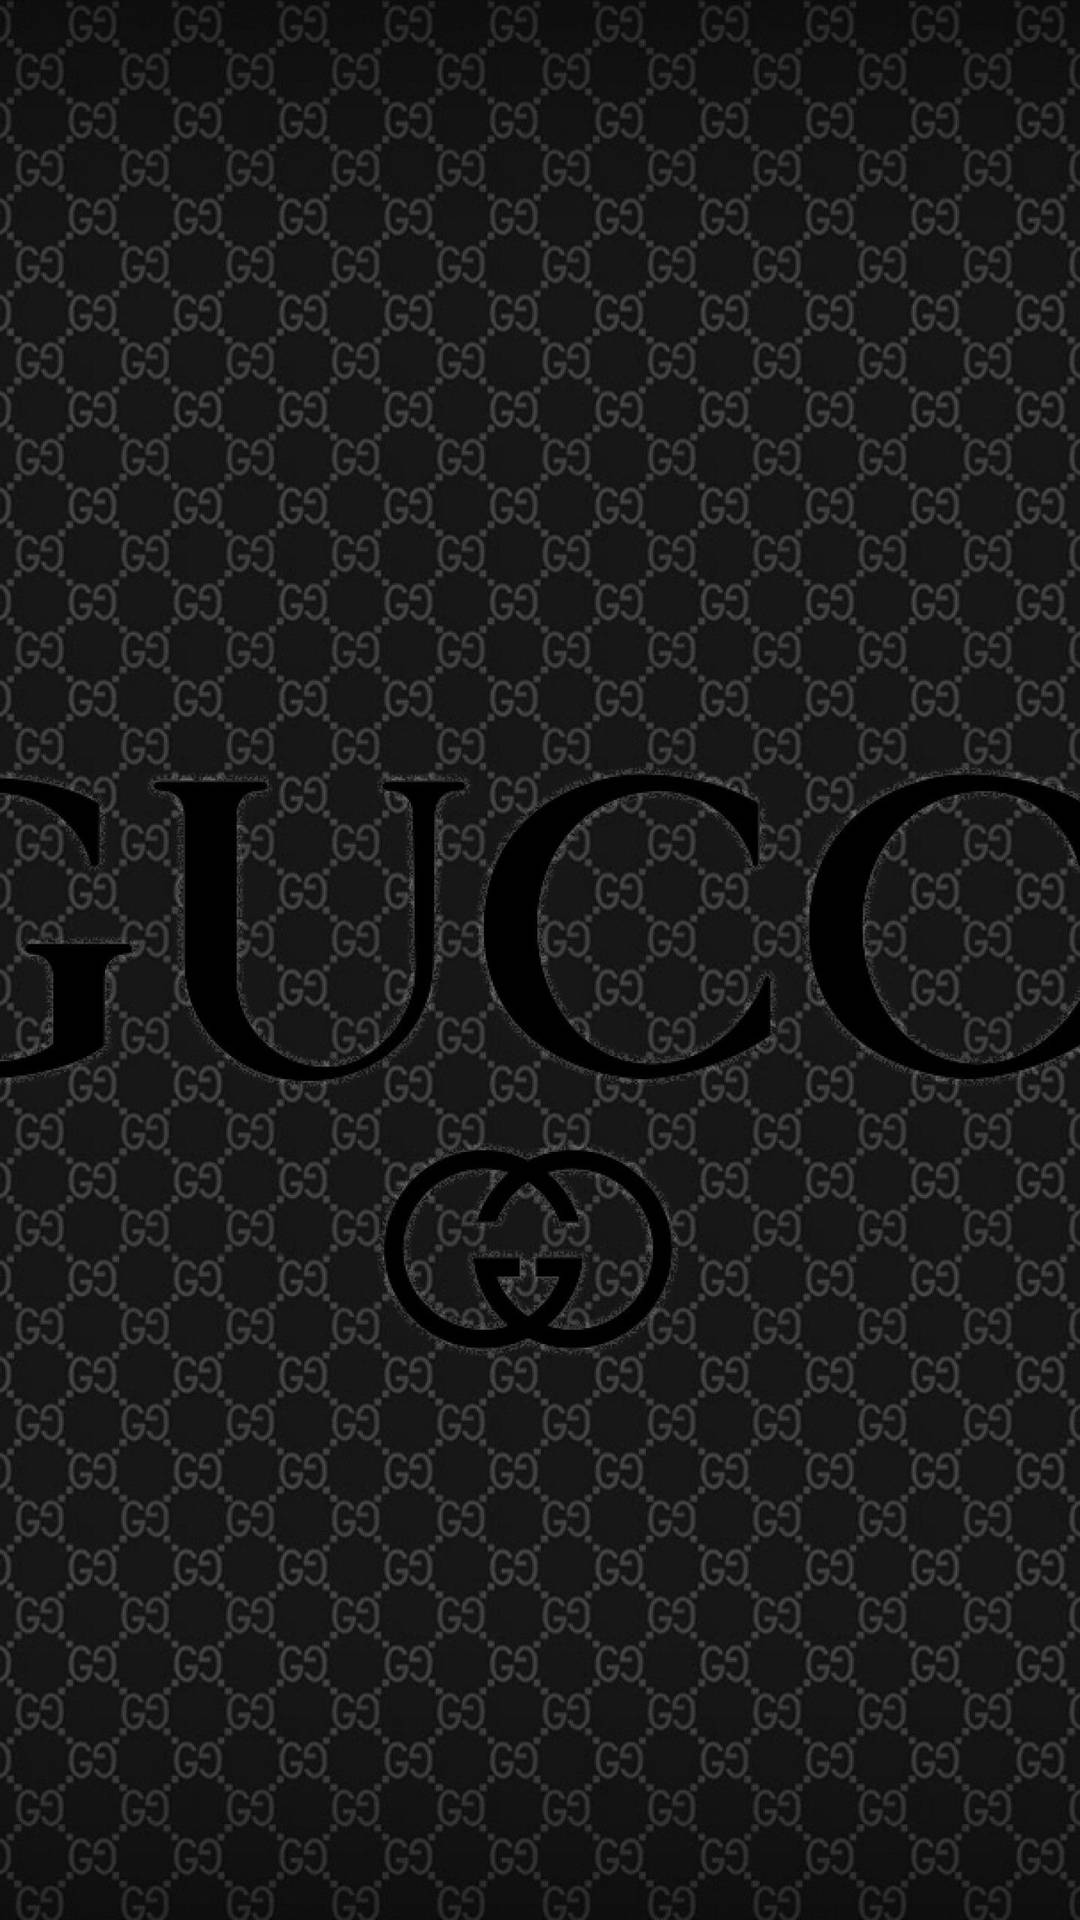 Gucci Wallpaper Full HD, 4K